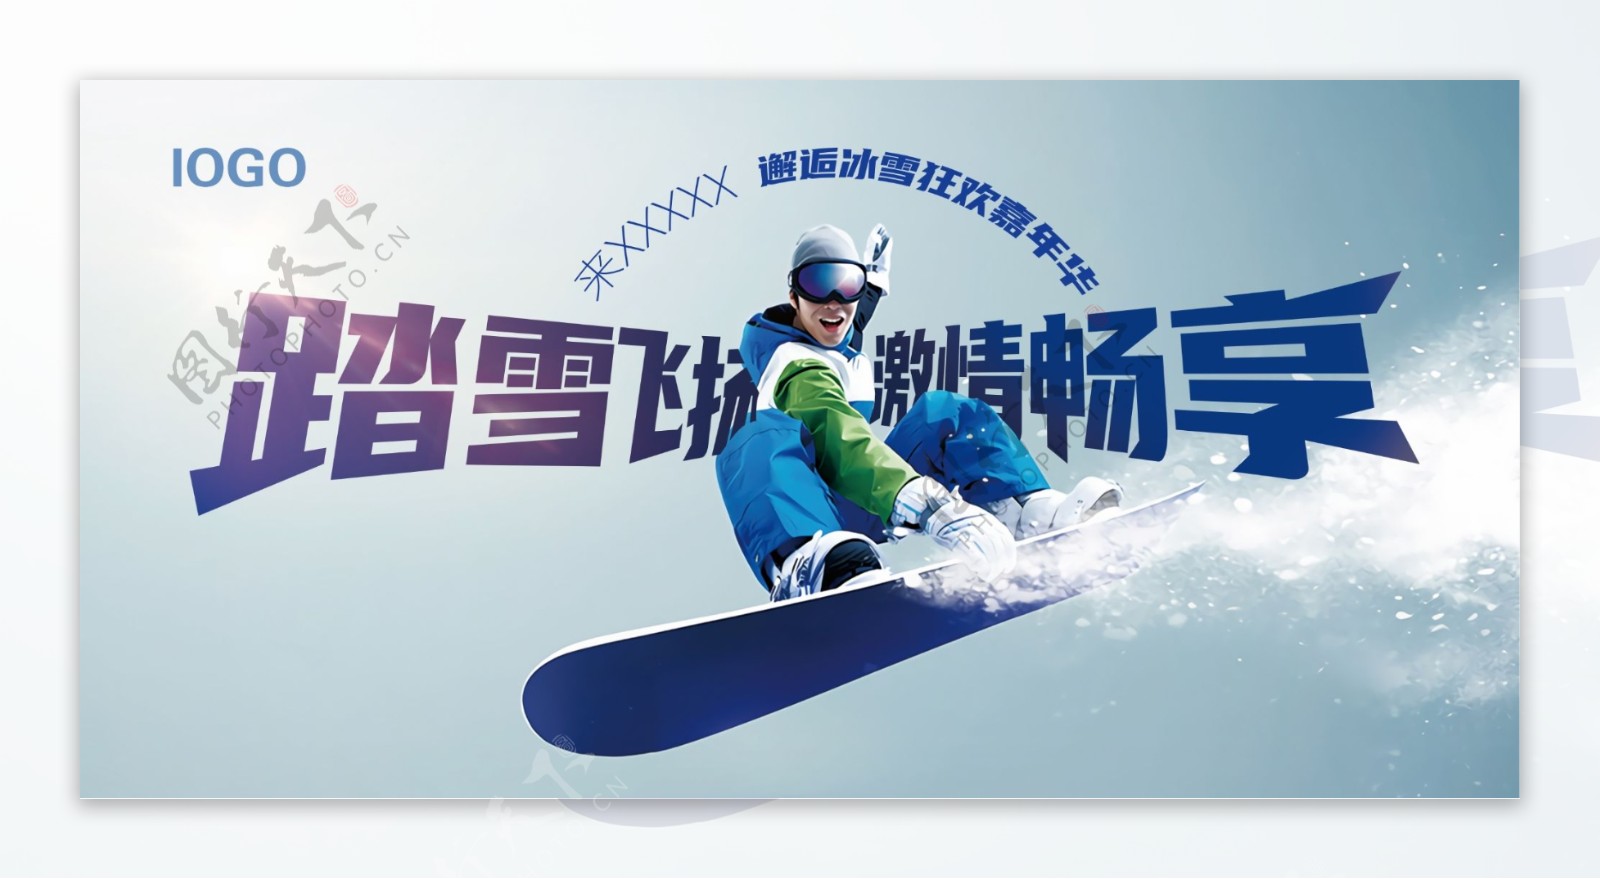 滑雪比赛滑雪活动滑雪暖场图片